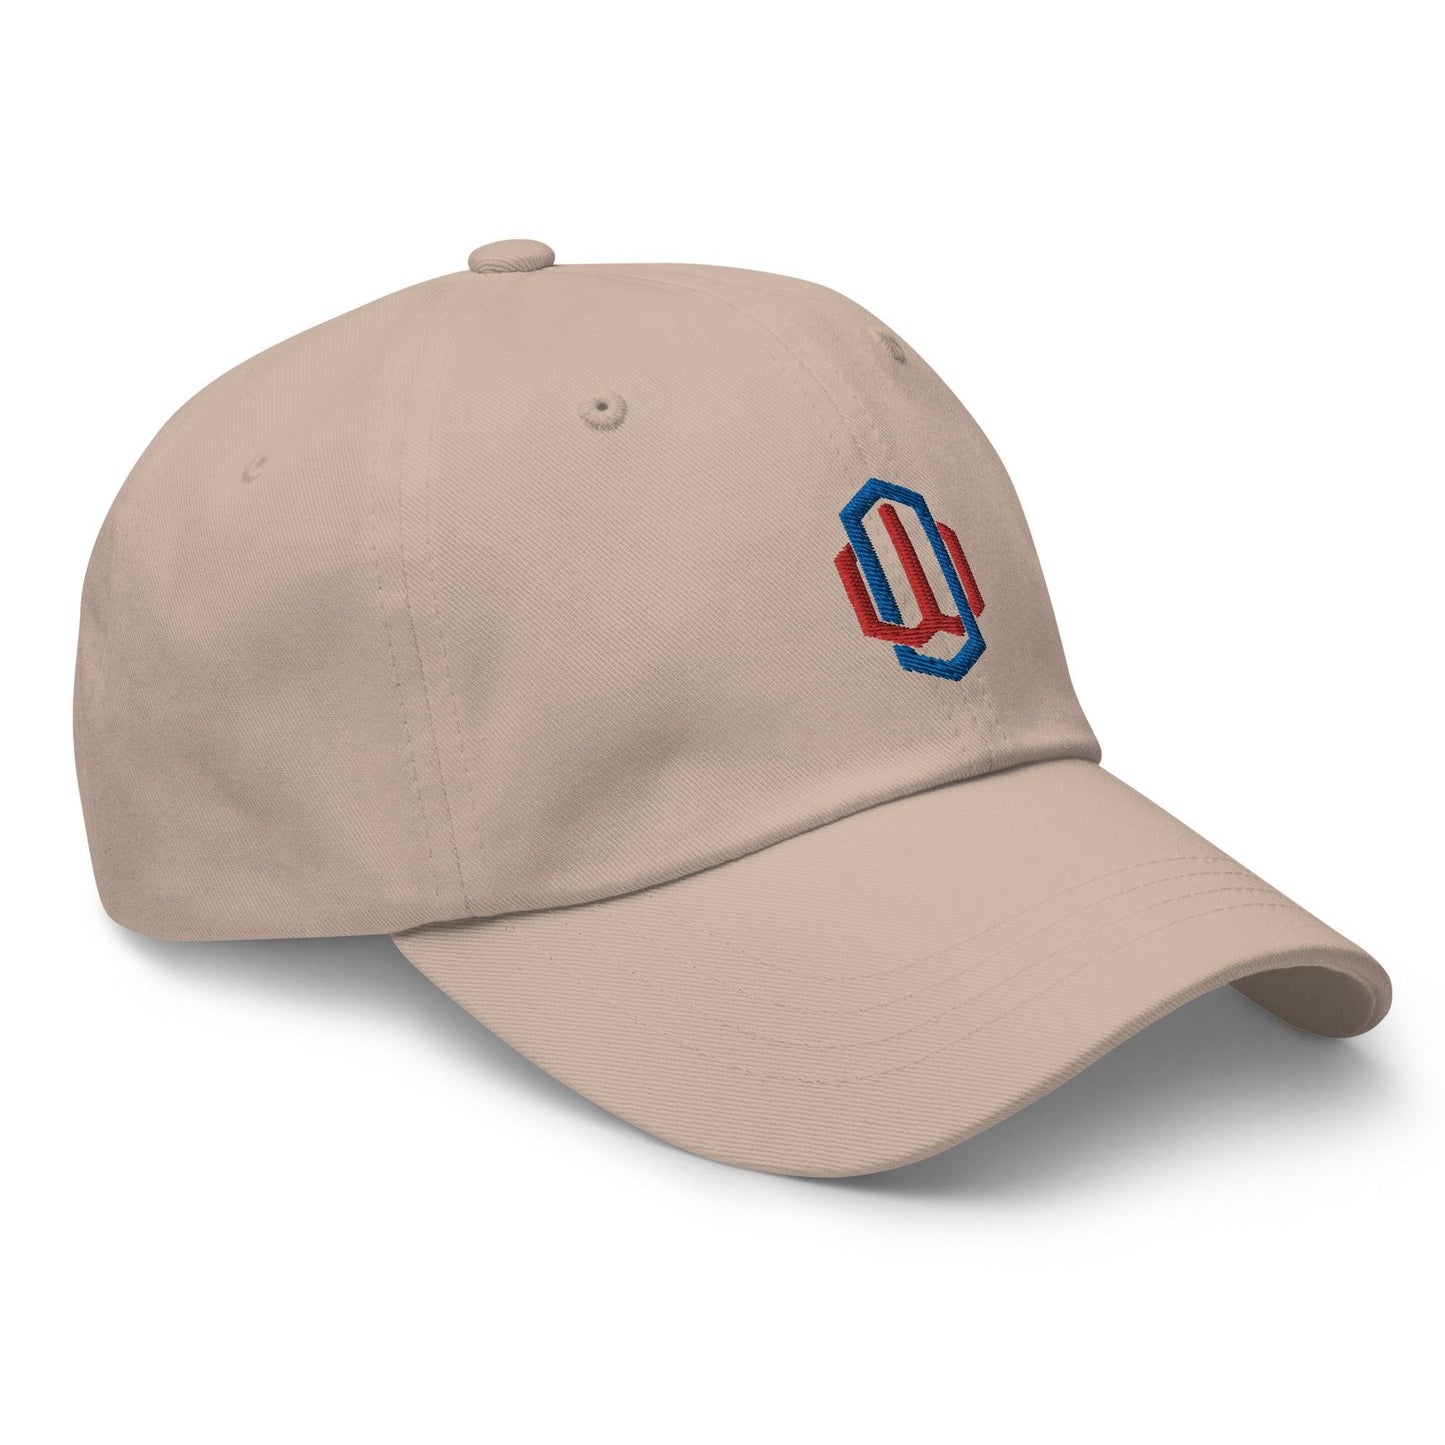 Owen White “OW” hat - Fan Arch